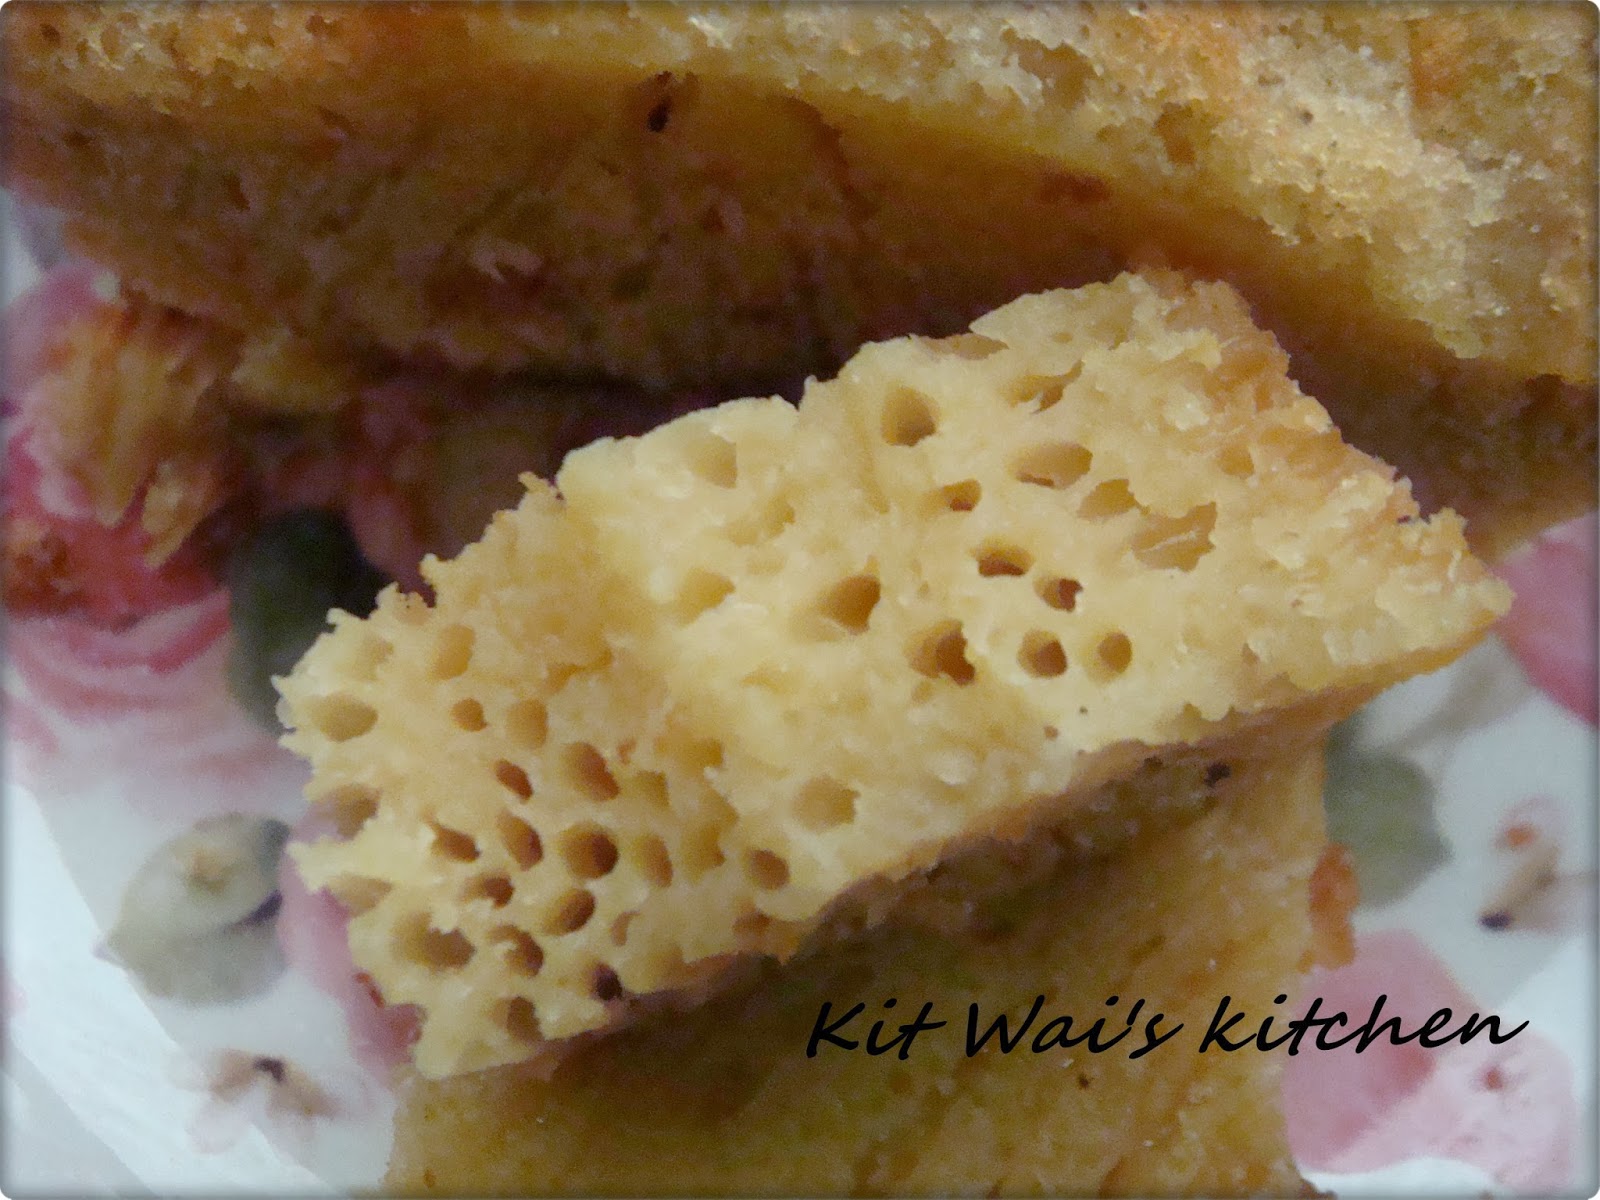 Kit Wai's kitchen : 印尼黄金糕 ~ Bika Ambon / “ Kuih Apom